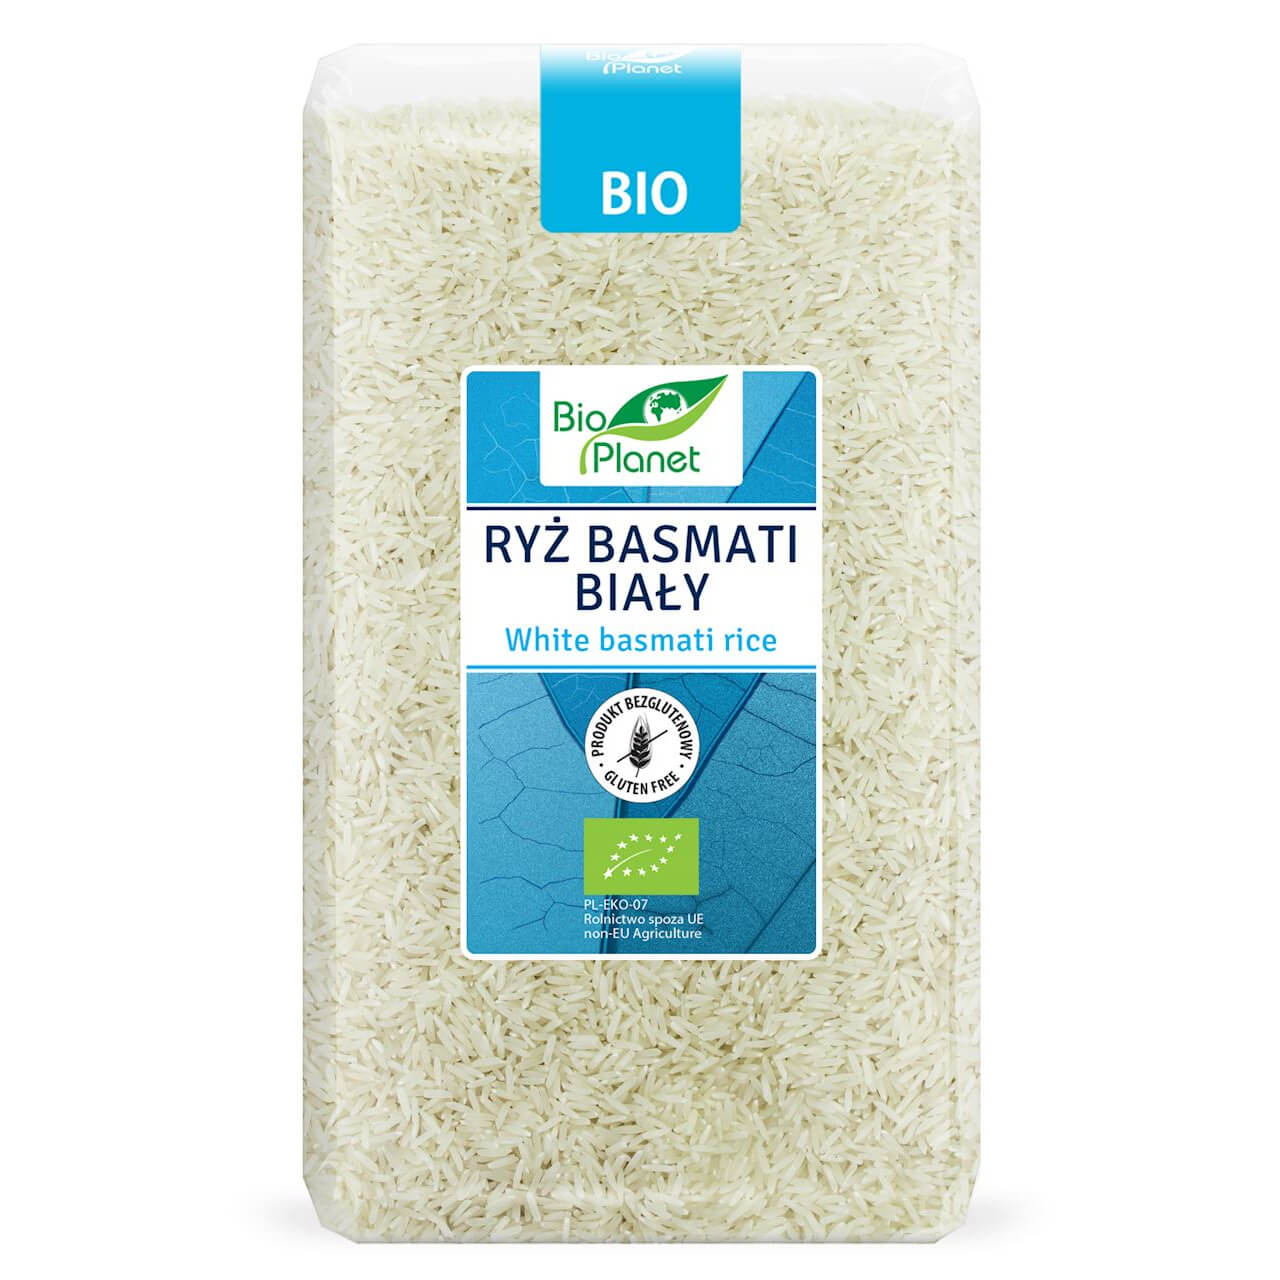 Ryż basmati biały BIO 1 kg - Bio Planet